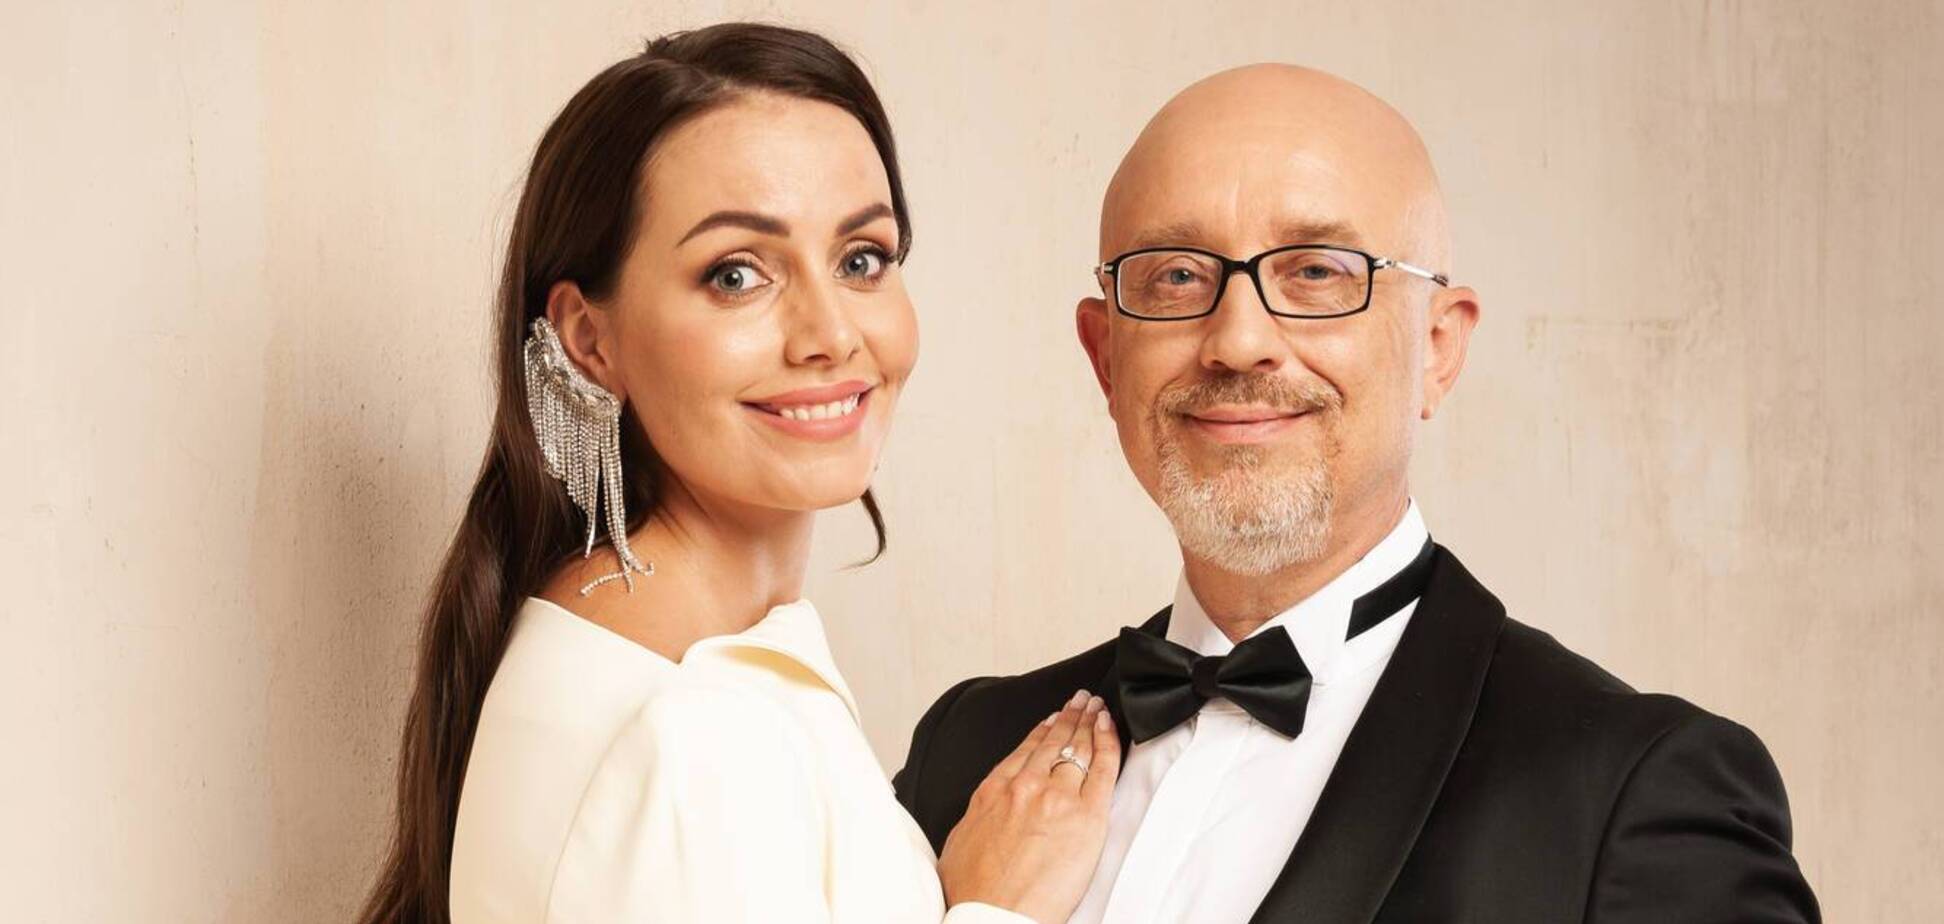 Популярная украинская телеведущая вышла замуж за вице-премьера Резникова. Фото